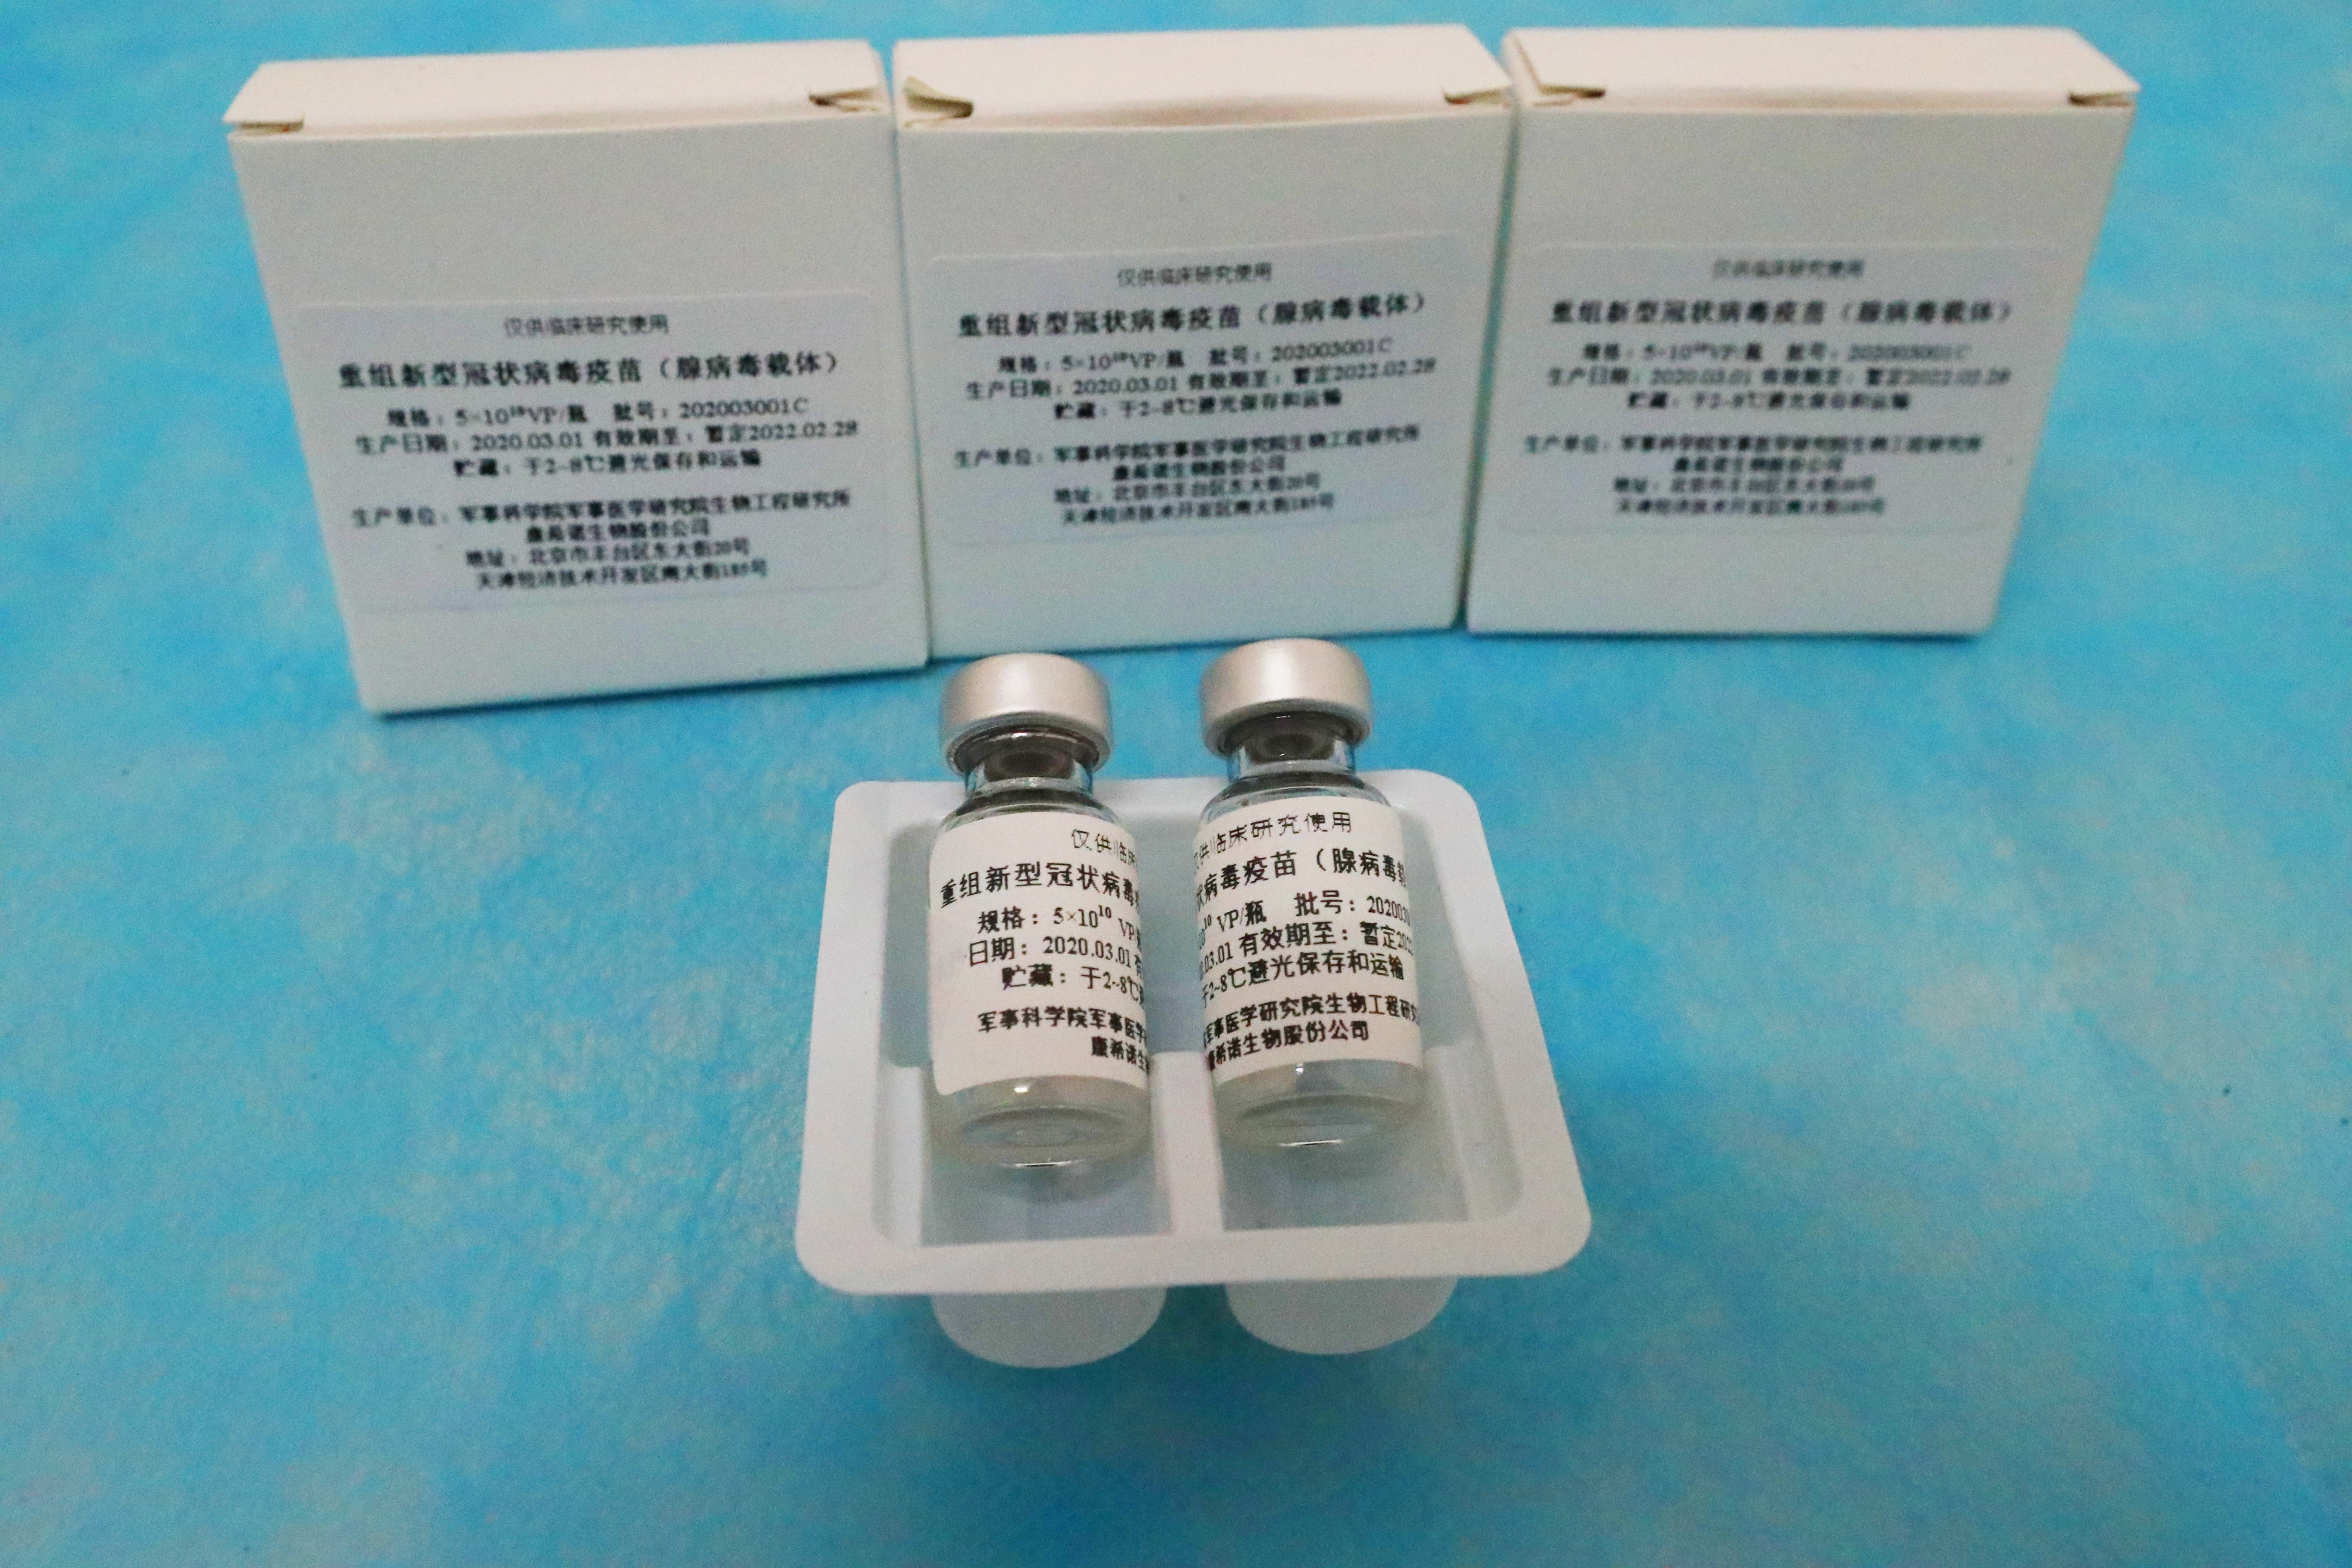 Китайская вакцина. Covid-19 вакцина китайская. Китайская вакцина от коронавируса. Вакцина Cansino biologics. Китайская вакцина от ковид название.